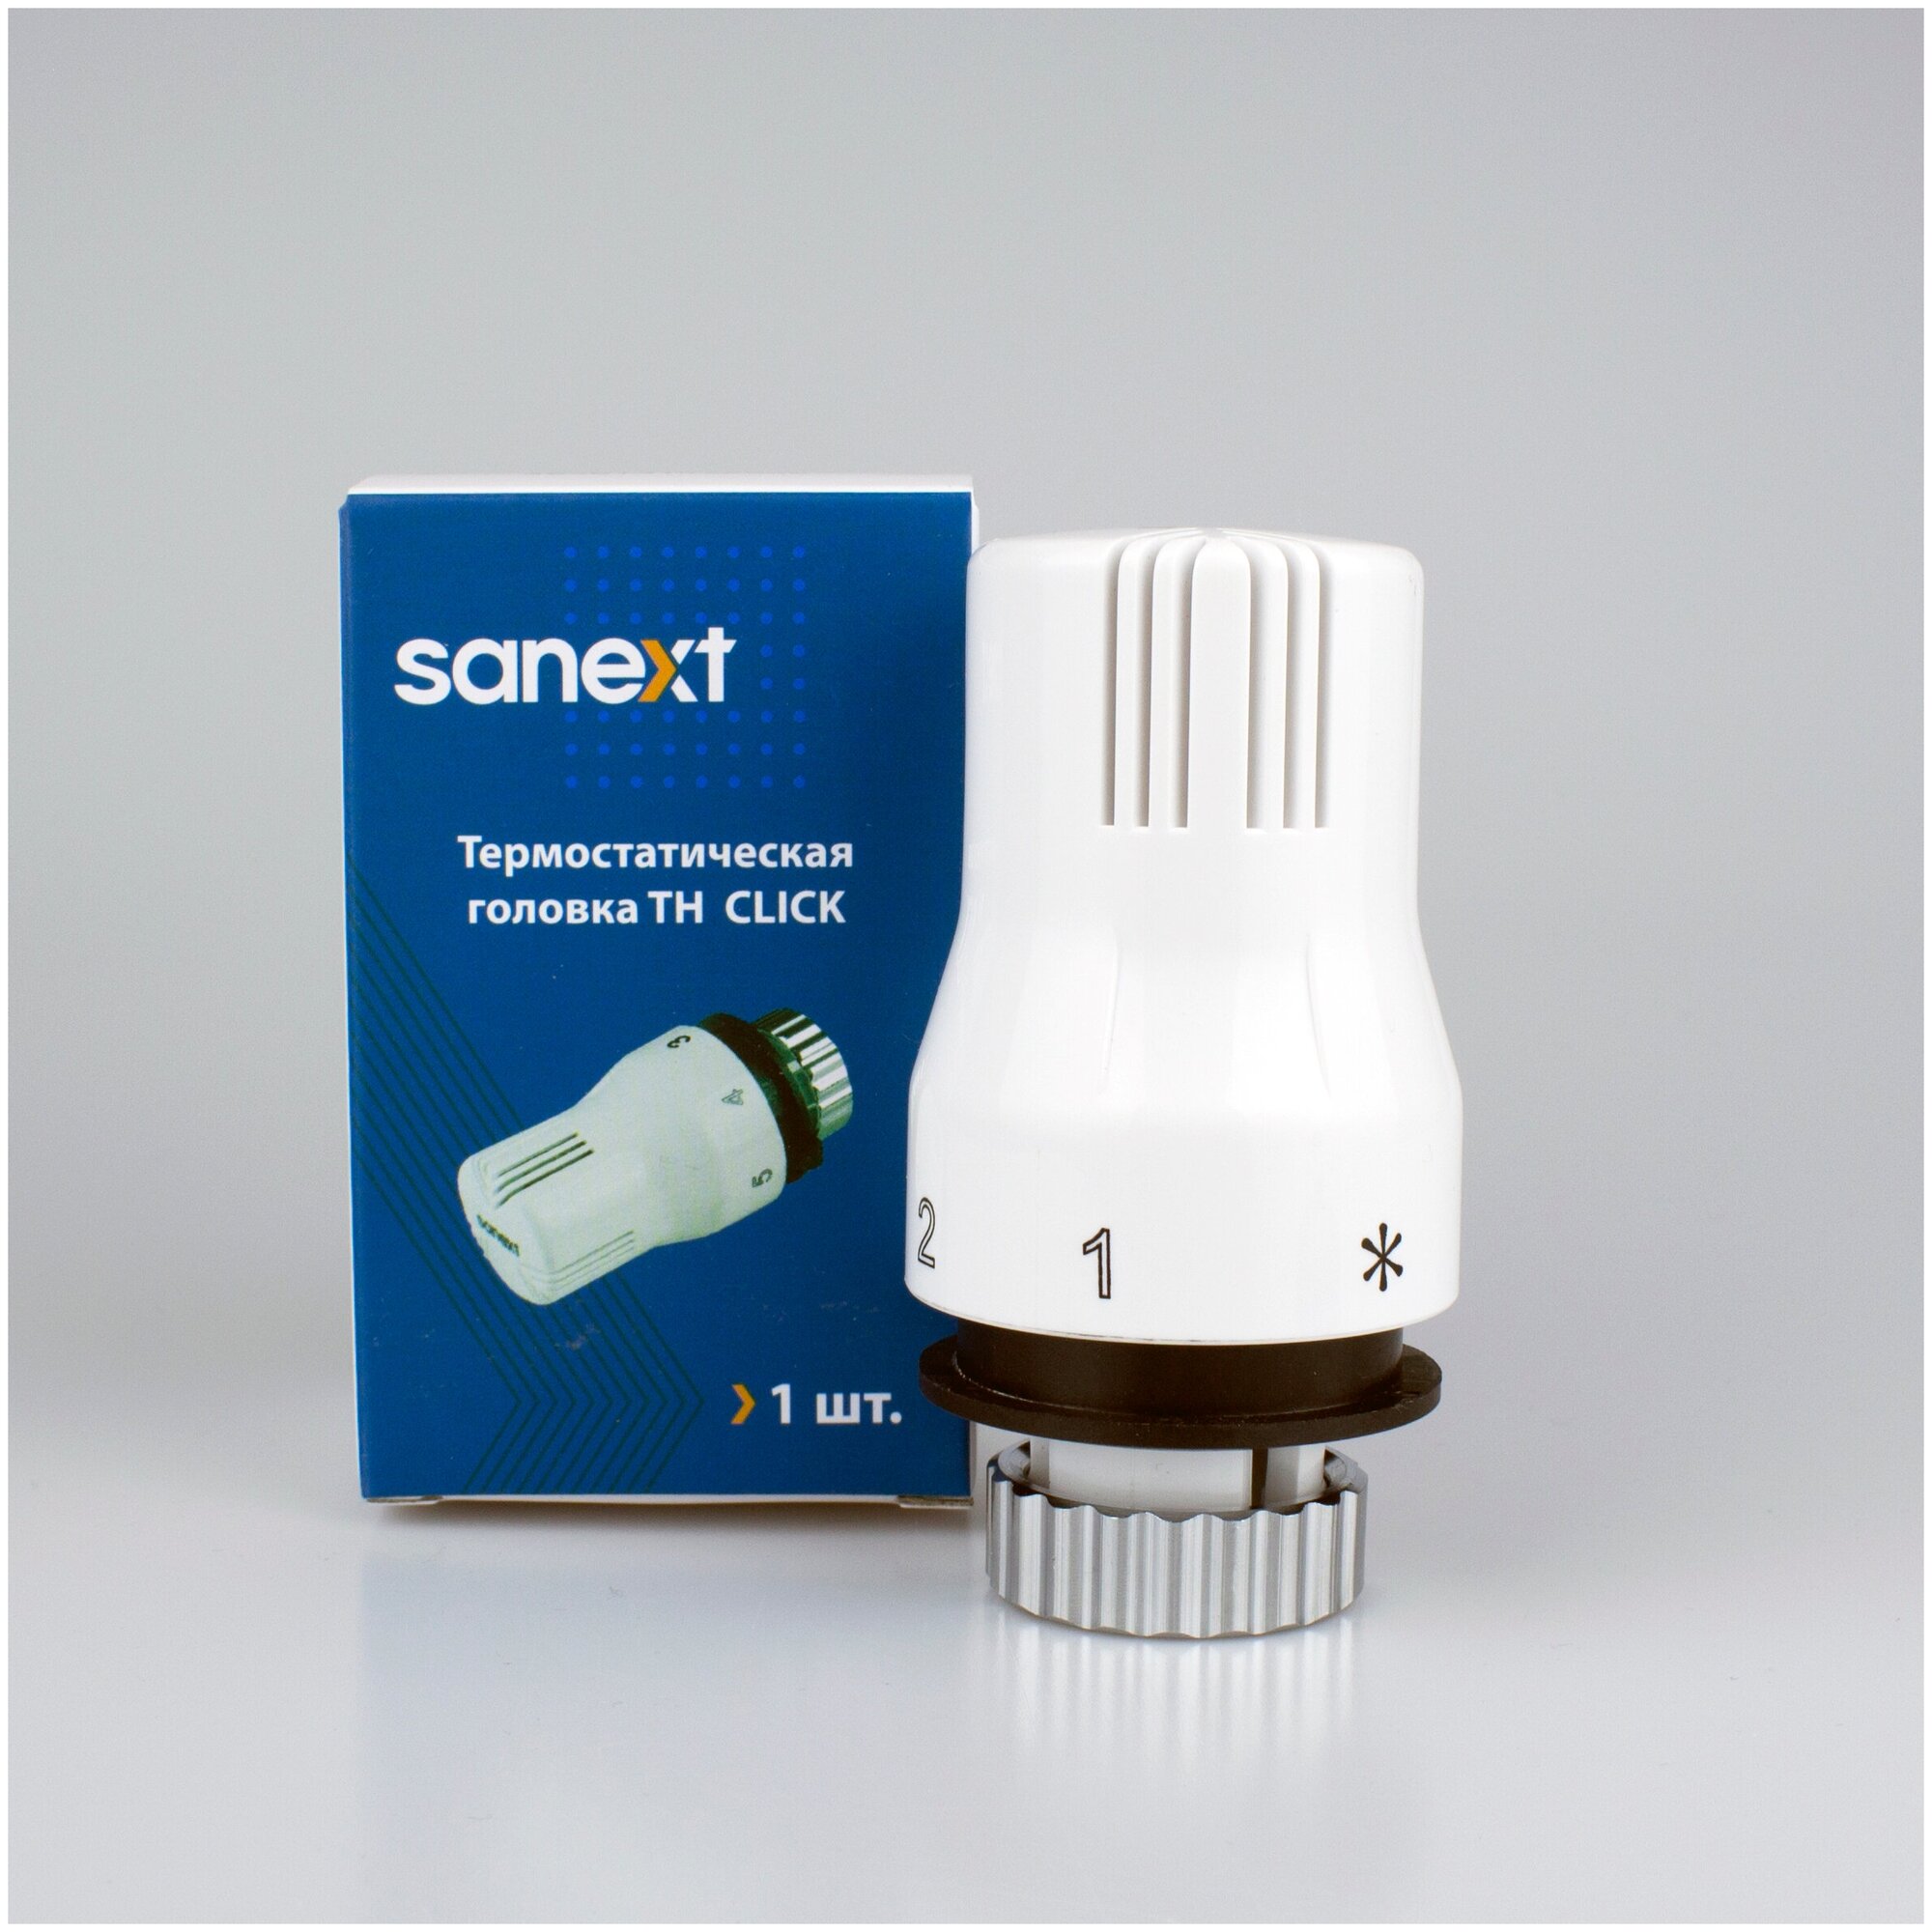 Термостатический элемент (термоголовка) Sanext TH Click 6902 (Danfoss)